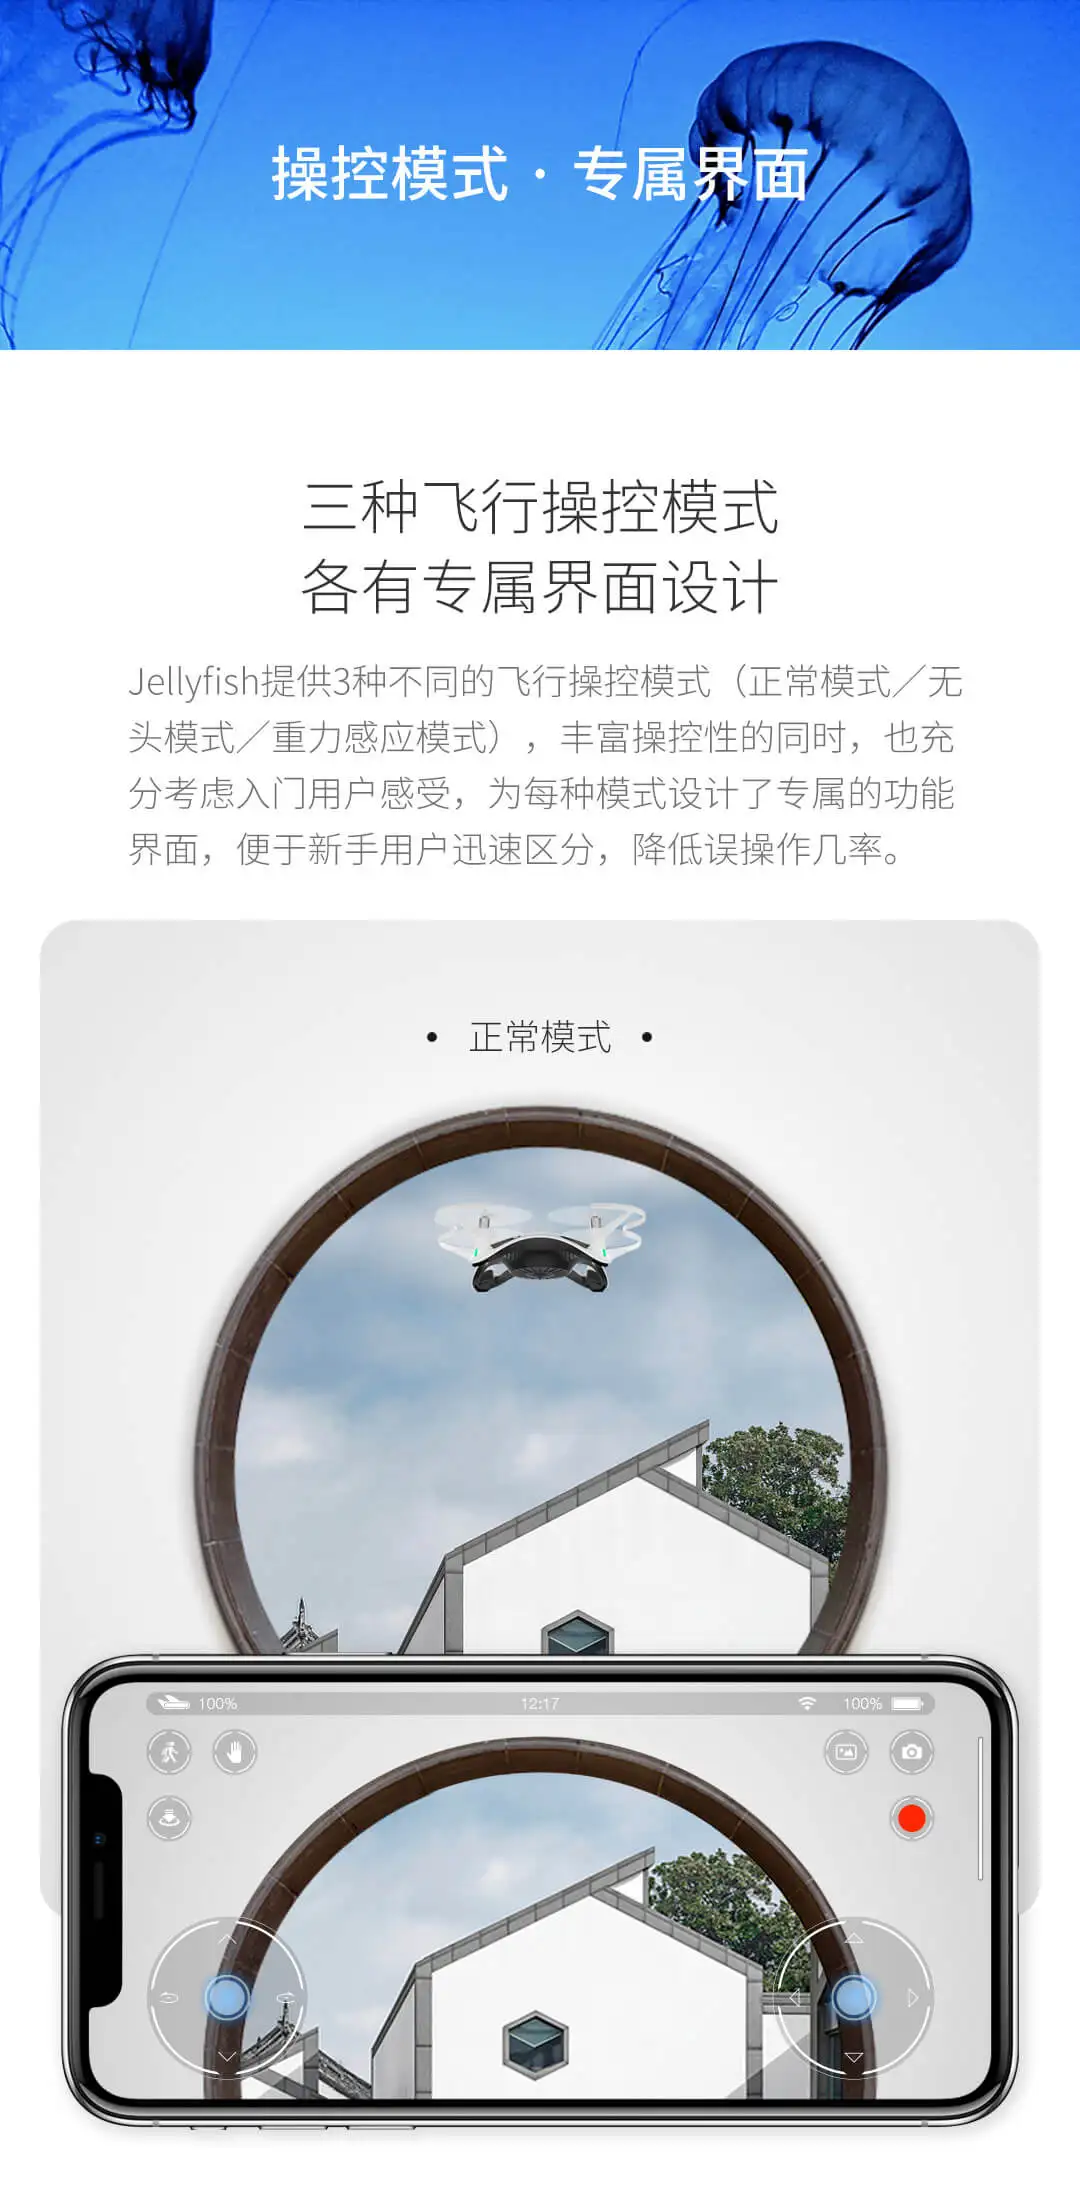 Радиоуправляемый мини-Дрон Xiaomi Jellyfish с камерой wifi FPV с камерой 720P Gimbal HD камера для RC камеры аксессуары для Дронов